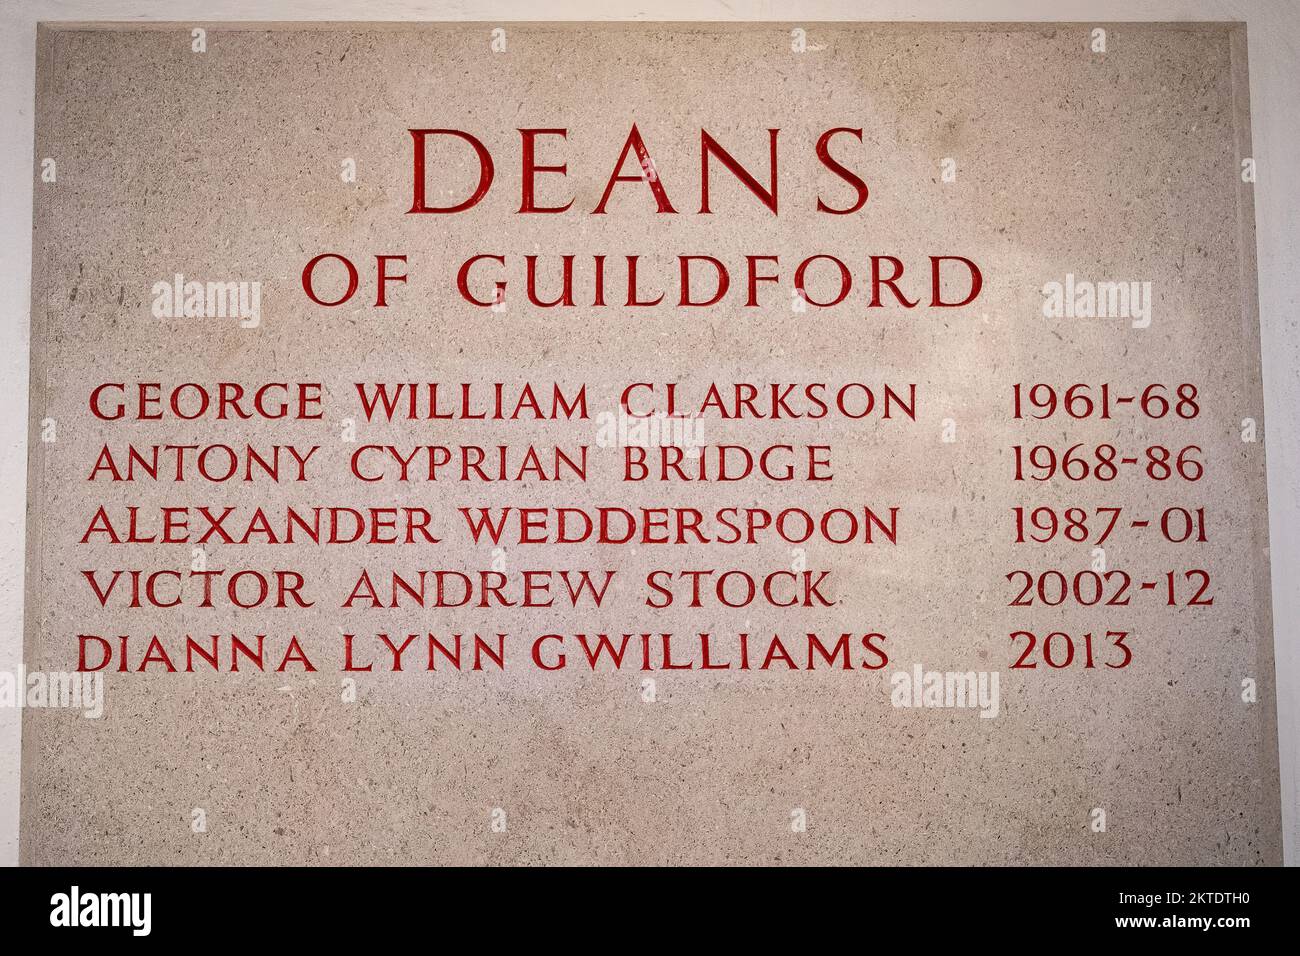 Deans of Guildford, lista sobre la placa de piedra dentro de Guildford Cathedral, Surrey, Inglaterra, Reino Unido Foto de stock